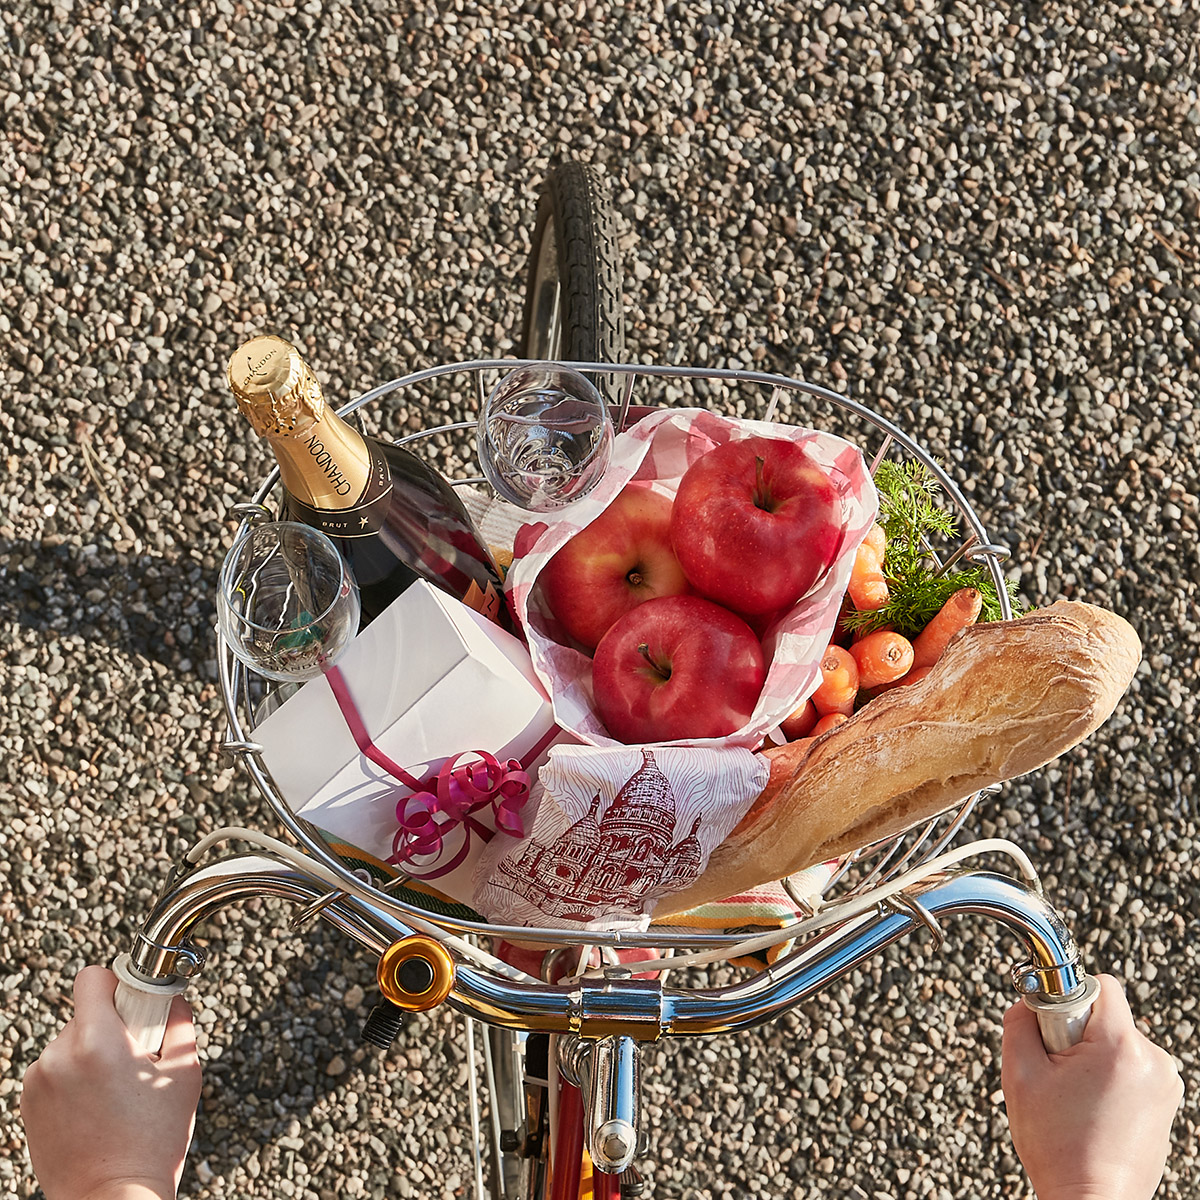 Panier picnic sur un vélo